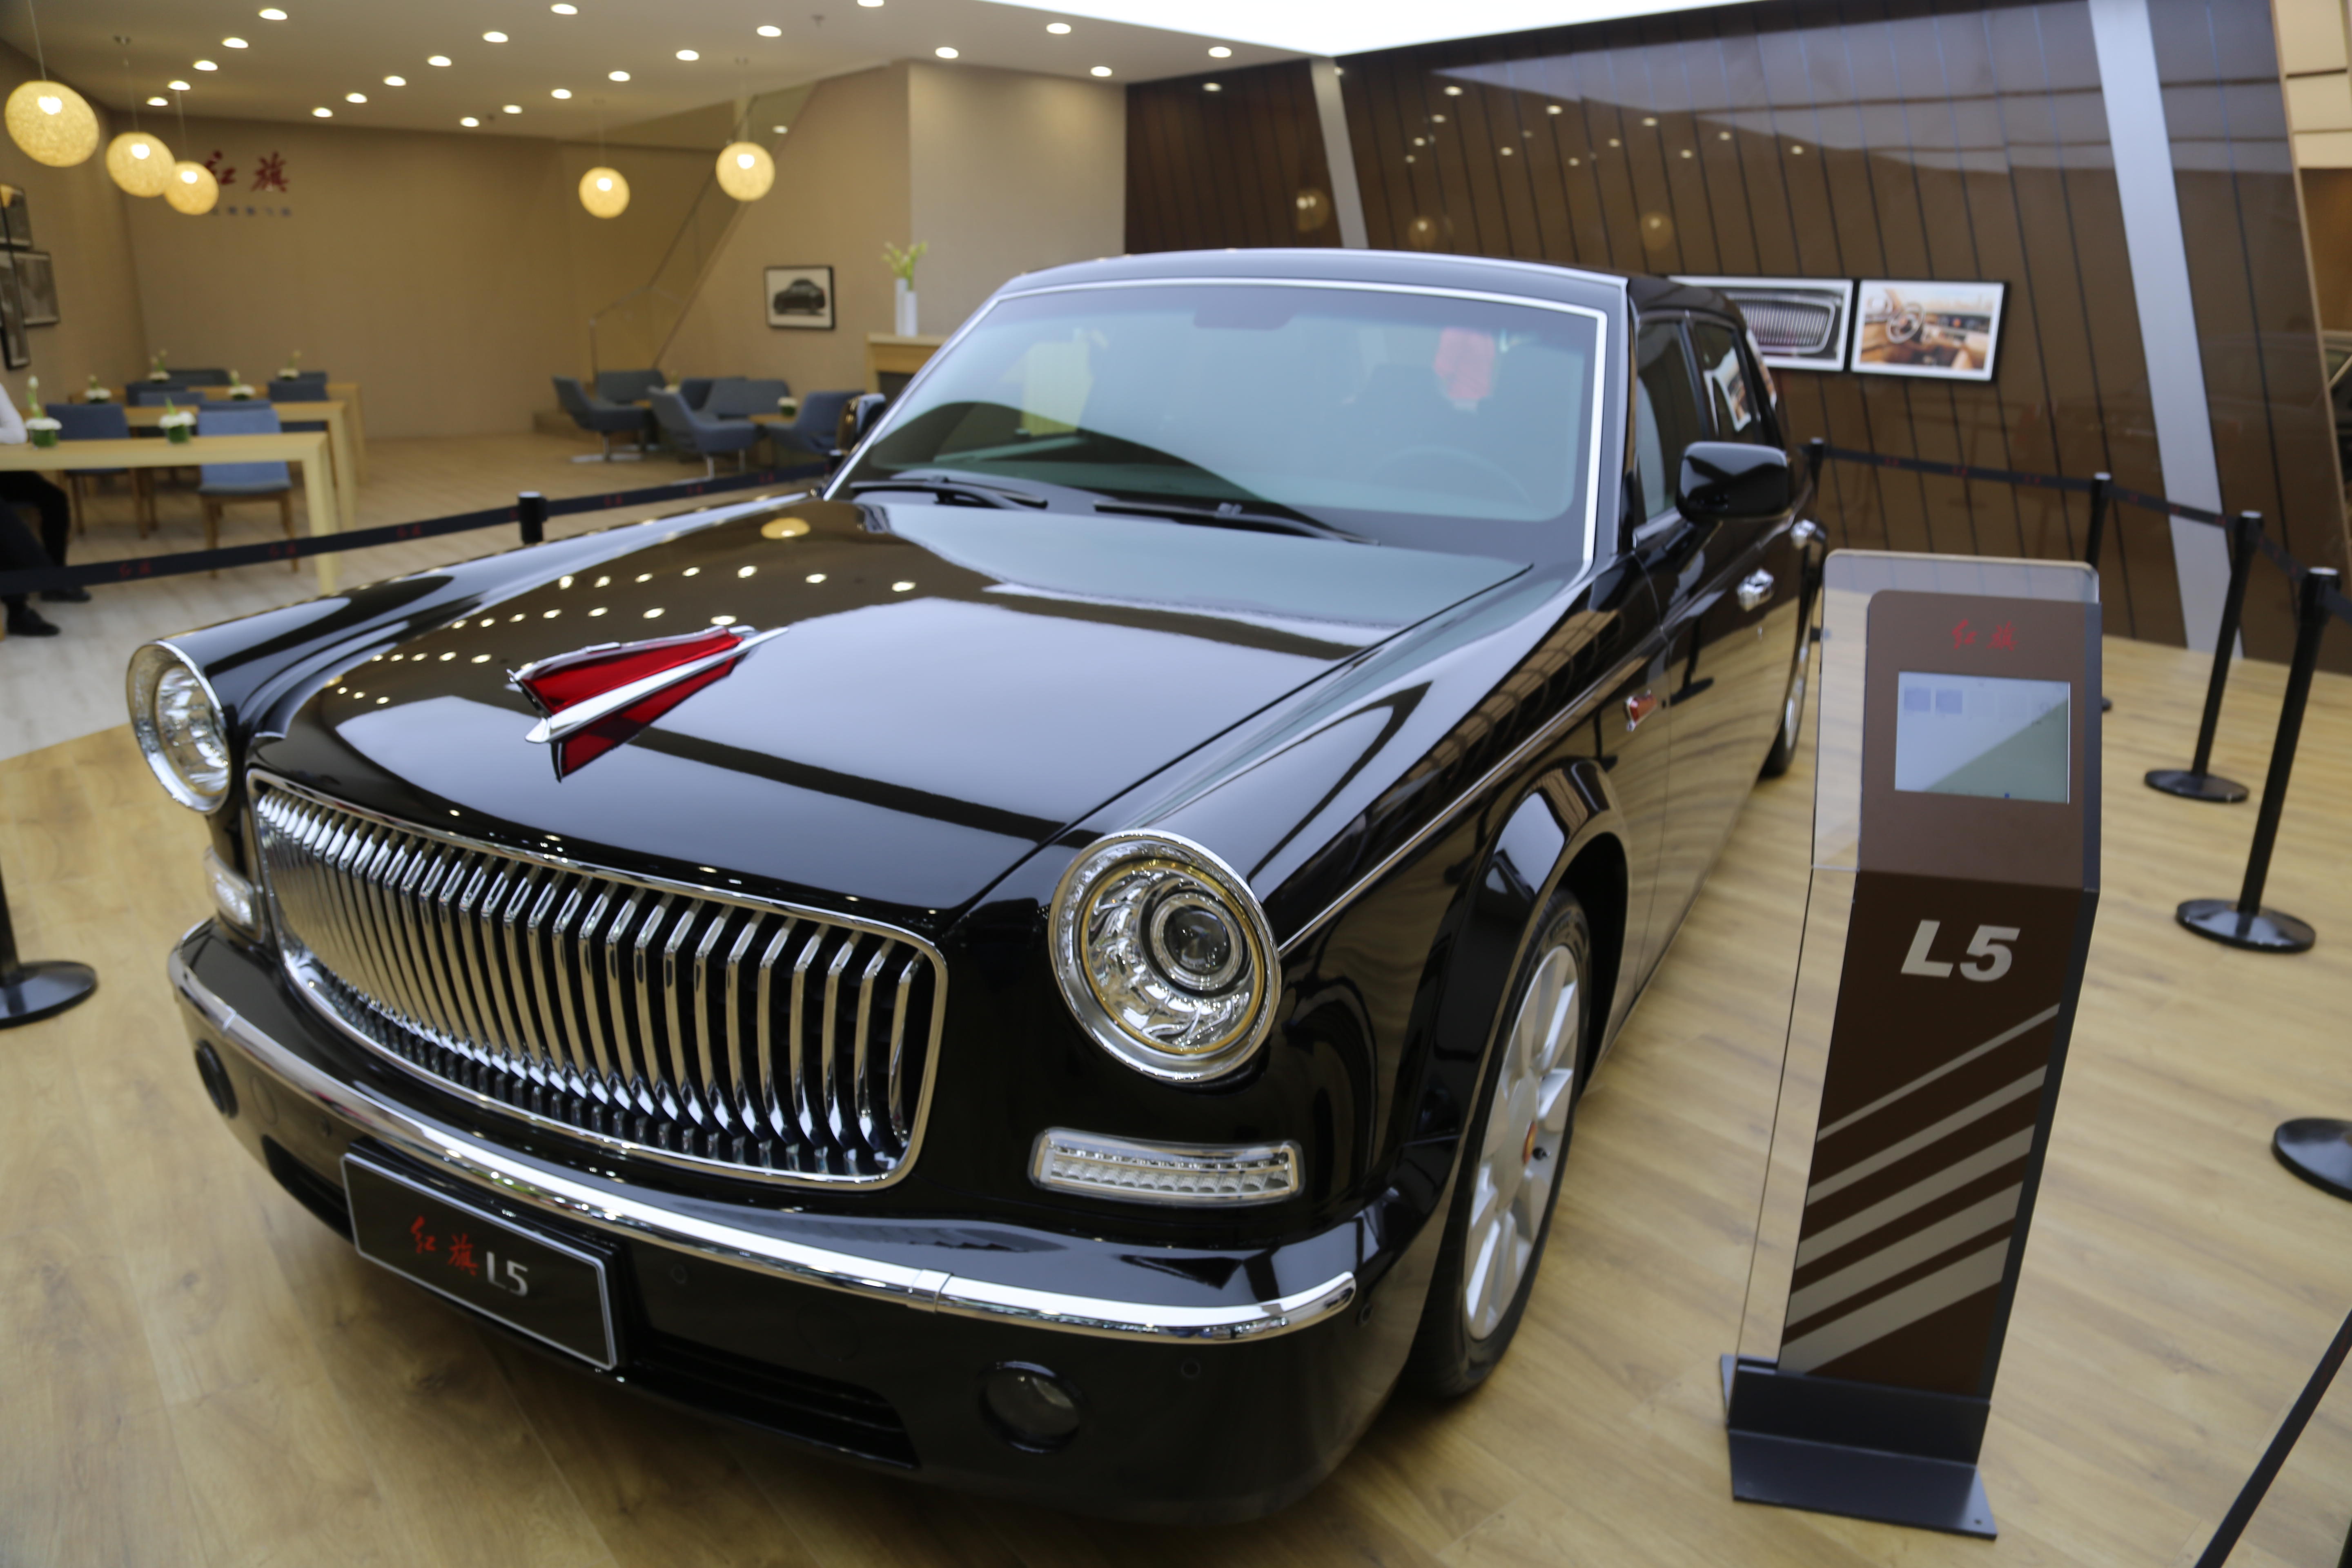 红旗l5车展实拍,中国版劳斯莱斯,售价高达500万